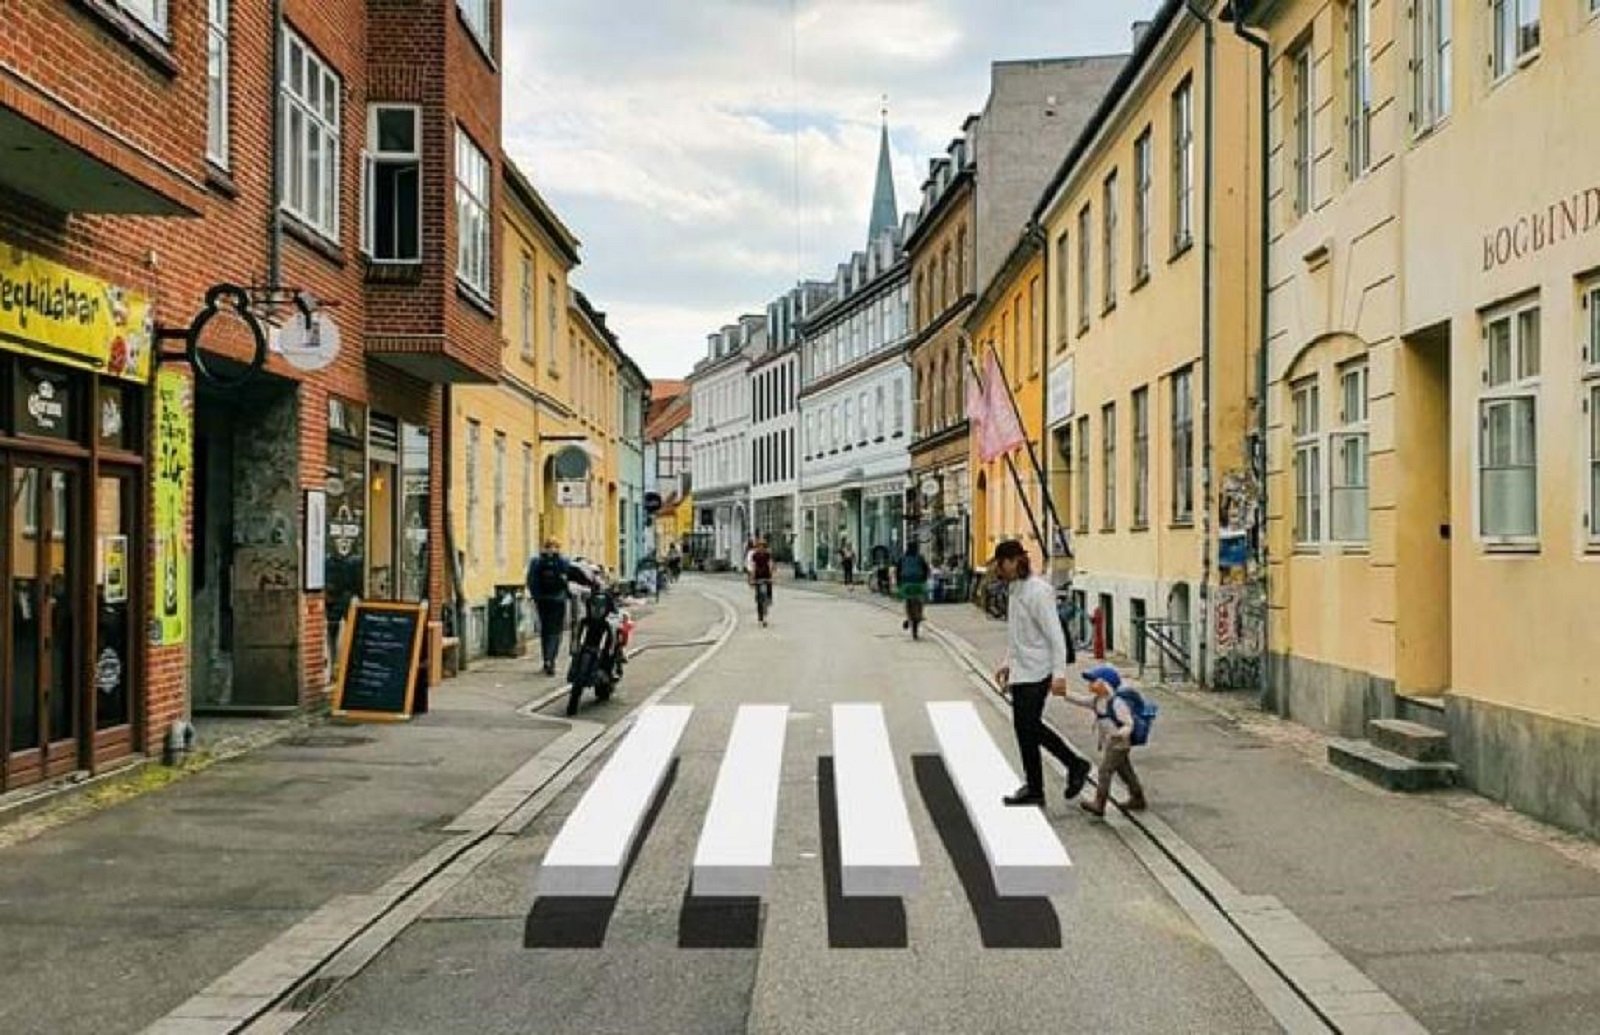 Pasos cebra 3D para reducir los accidentes, la propuesta de éxito en Dinamarca